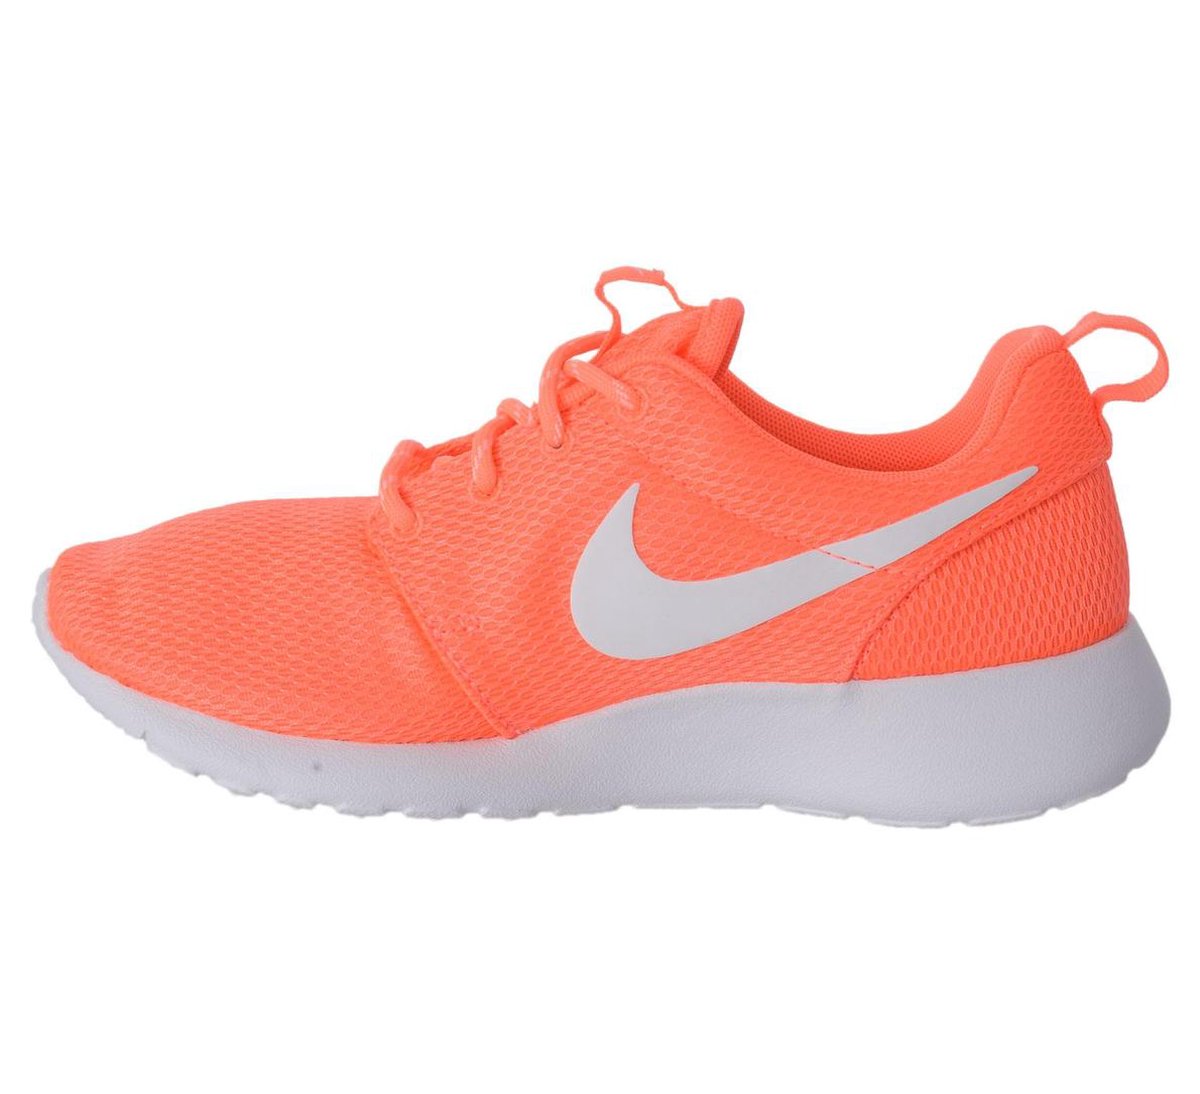 Nike Roshe One Sneakers Dames Sportschoenen - Maat 37.5 - Vrouwen -  oranje/roze/wit | bol.com